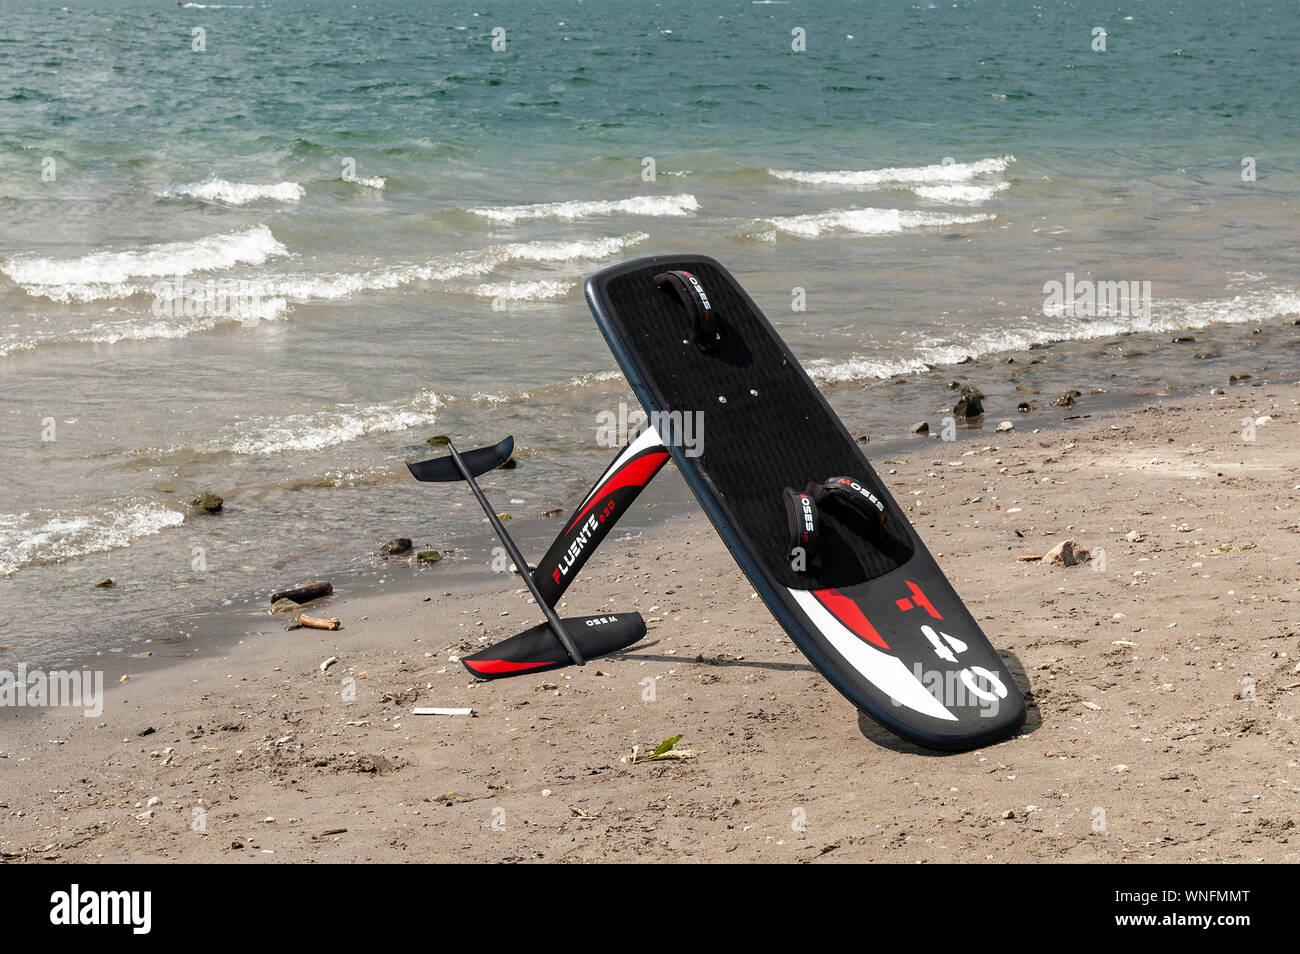 Il lago di Como, Italia - 21 luglio 2019. Windfoil ingranaggio su una spiaggia vicino all'acqua. Trasferimento a caldo di windsurf è nuovo stile di windsurf. Foto Stock